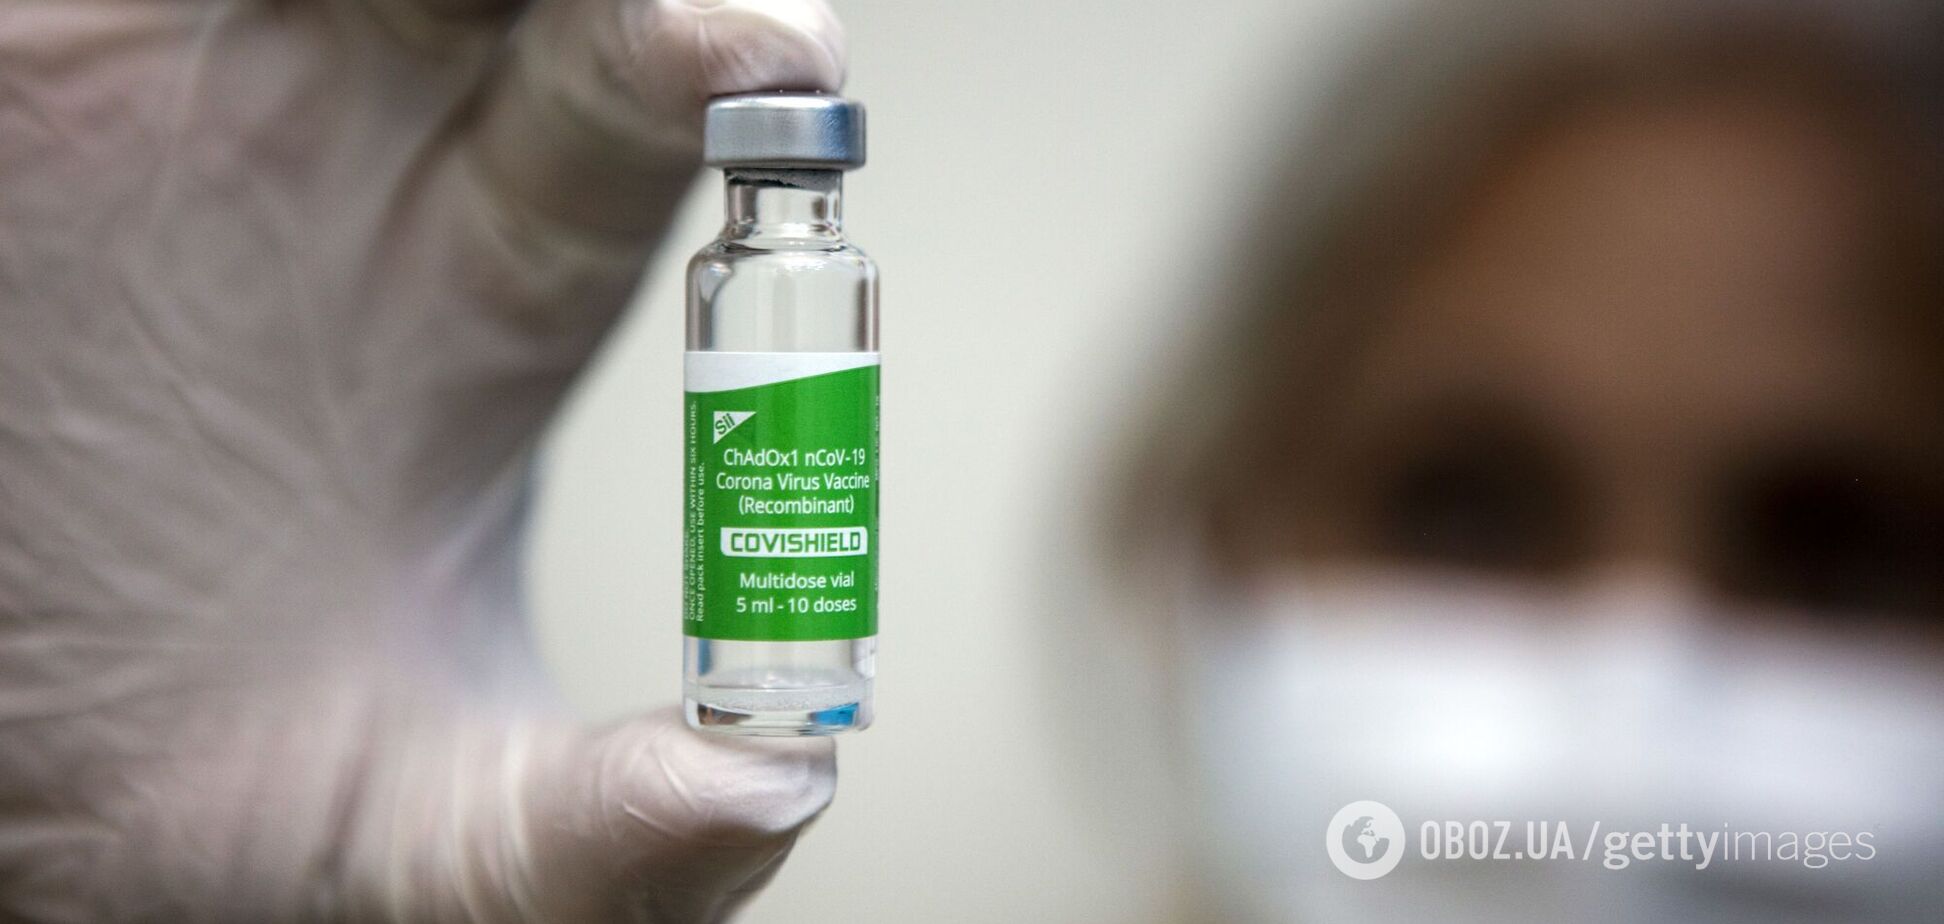 А что дает право украинцам так пренебрежительно относиться к индийским вакцинам?